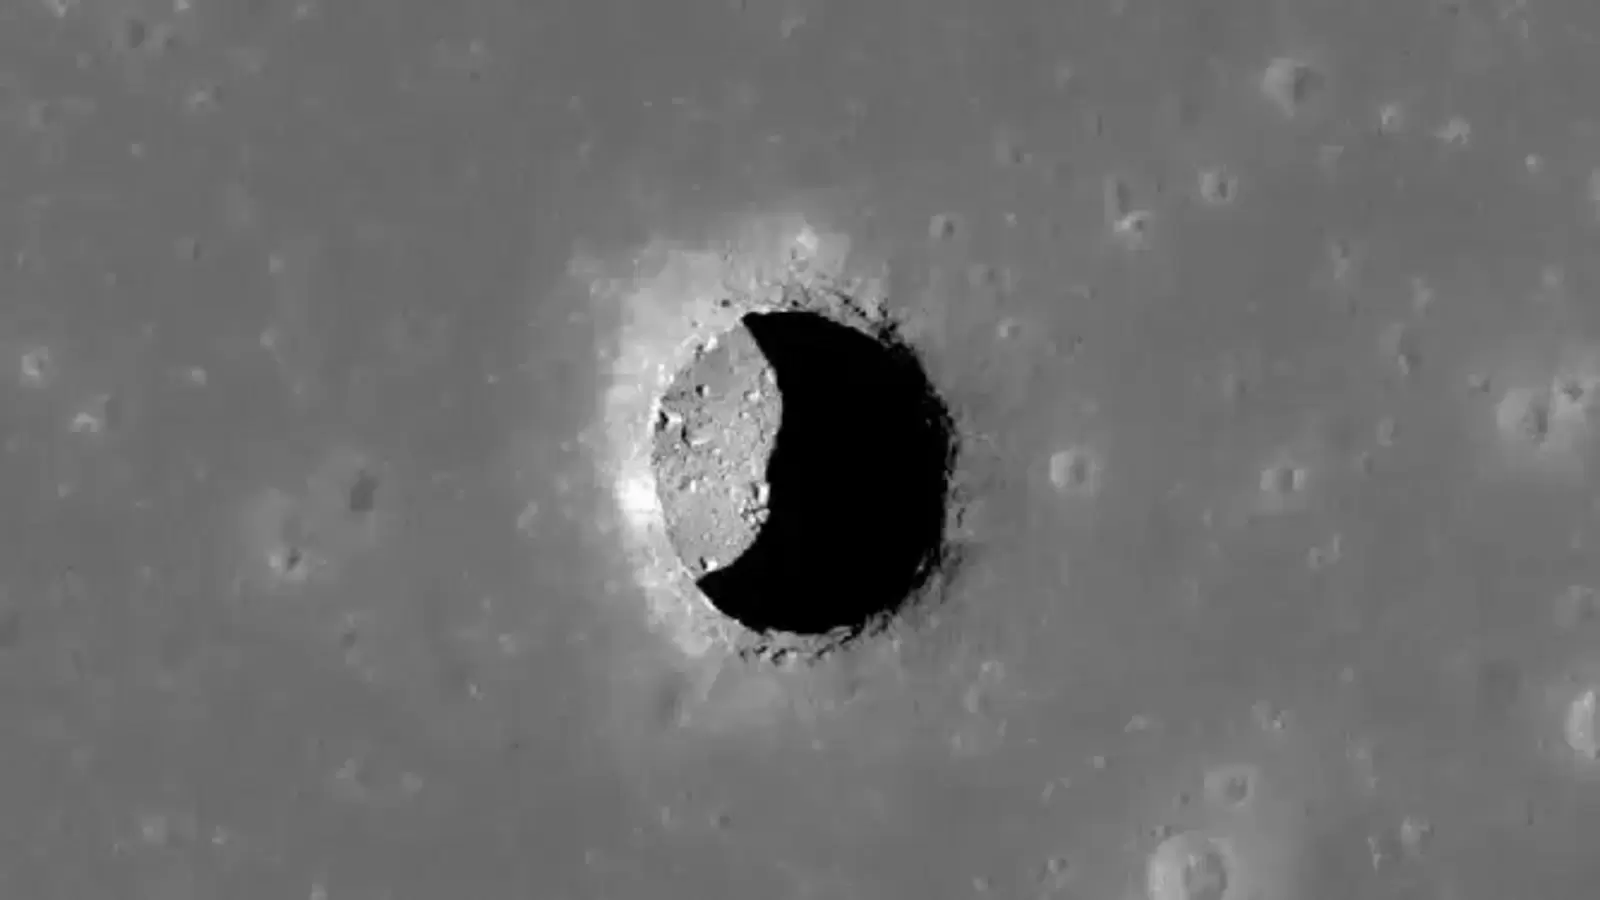 अंतरिक्ष यात्रियों के लिए भविष्य का ठिकाना? ऐतिहासिक अपोलो 11 साइट के पास चंद्रमा पर बड़ी गुफा मिली